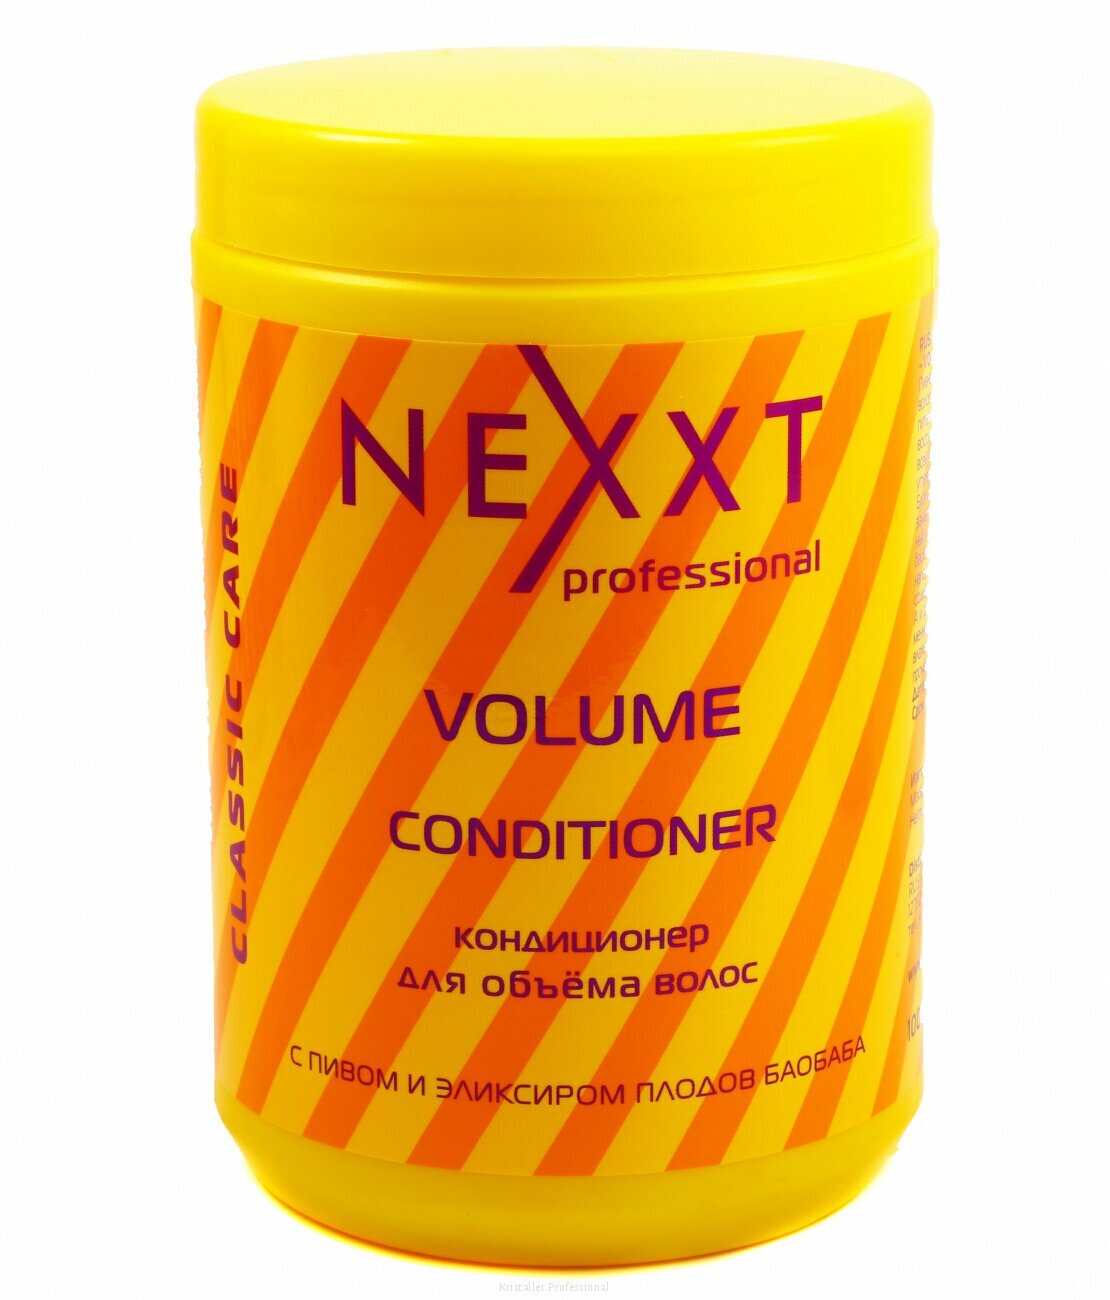 Кондиционер для объема волос c пивом и эликсиром плодов баобаба 1000 мл. Nexxt